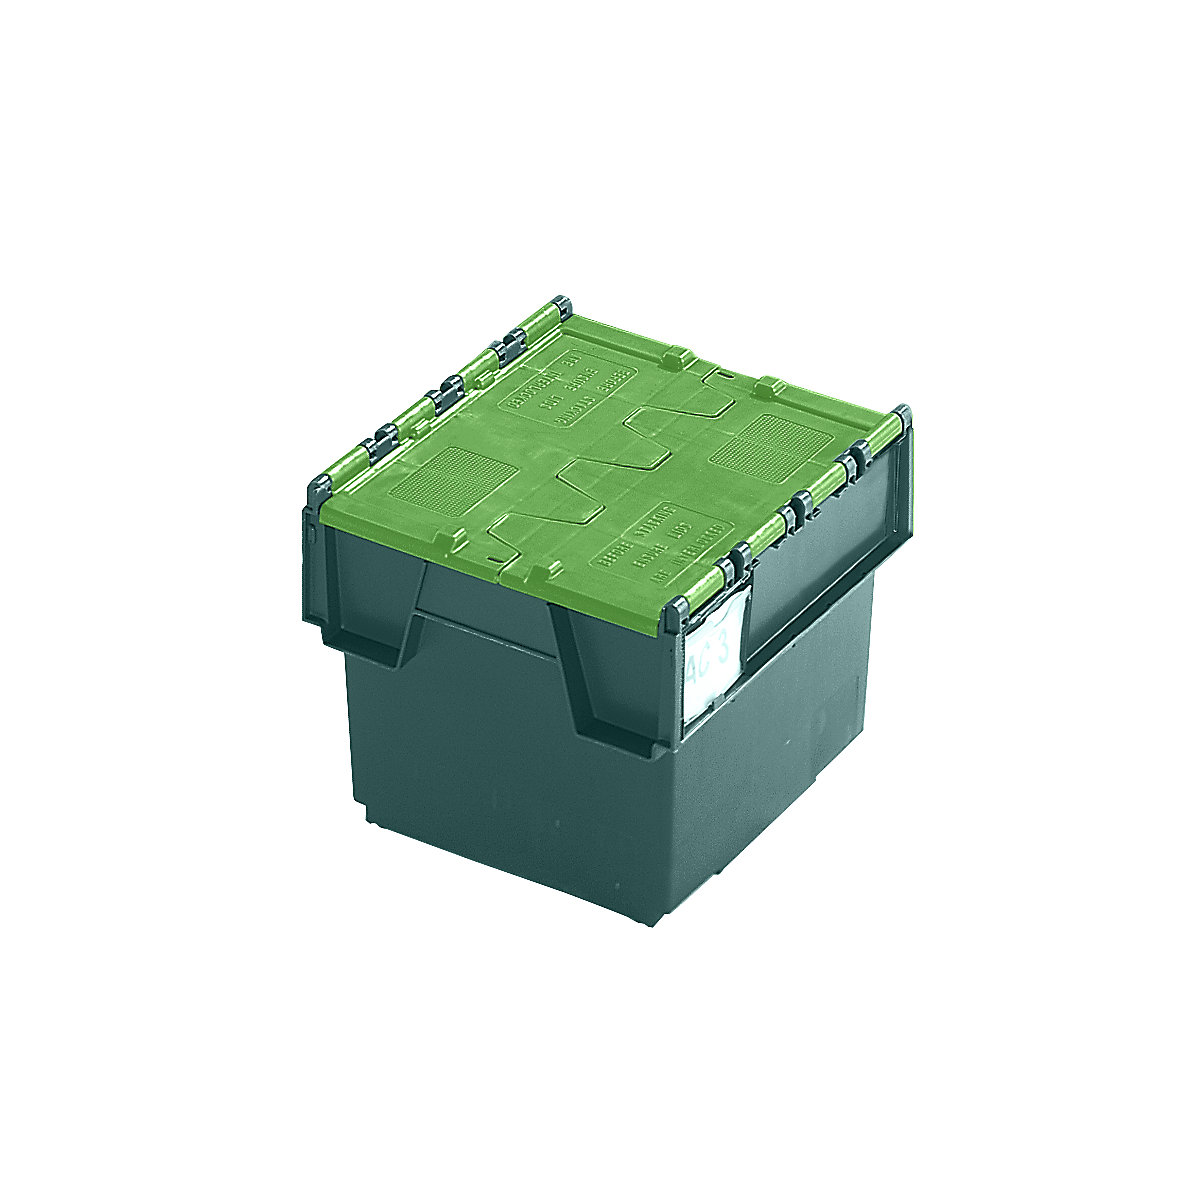 Mehrweg-Stapelbehälter KAIMAN, Inhalt 25 Liter, LxBxH 400 x 300 x 320 mm, grün